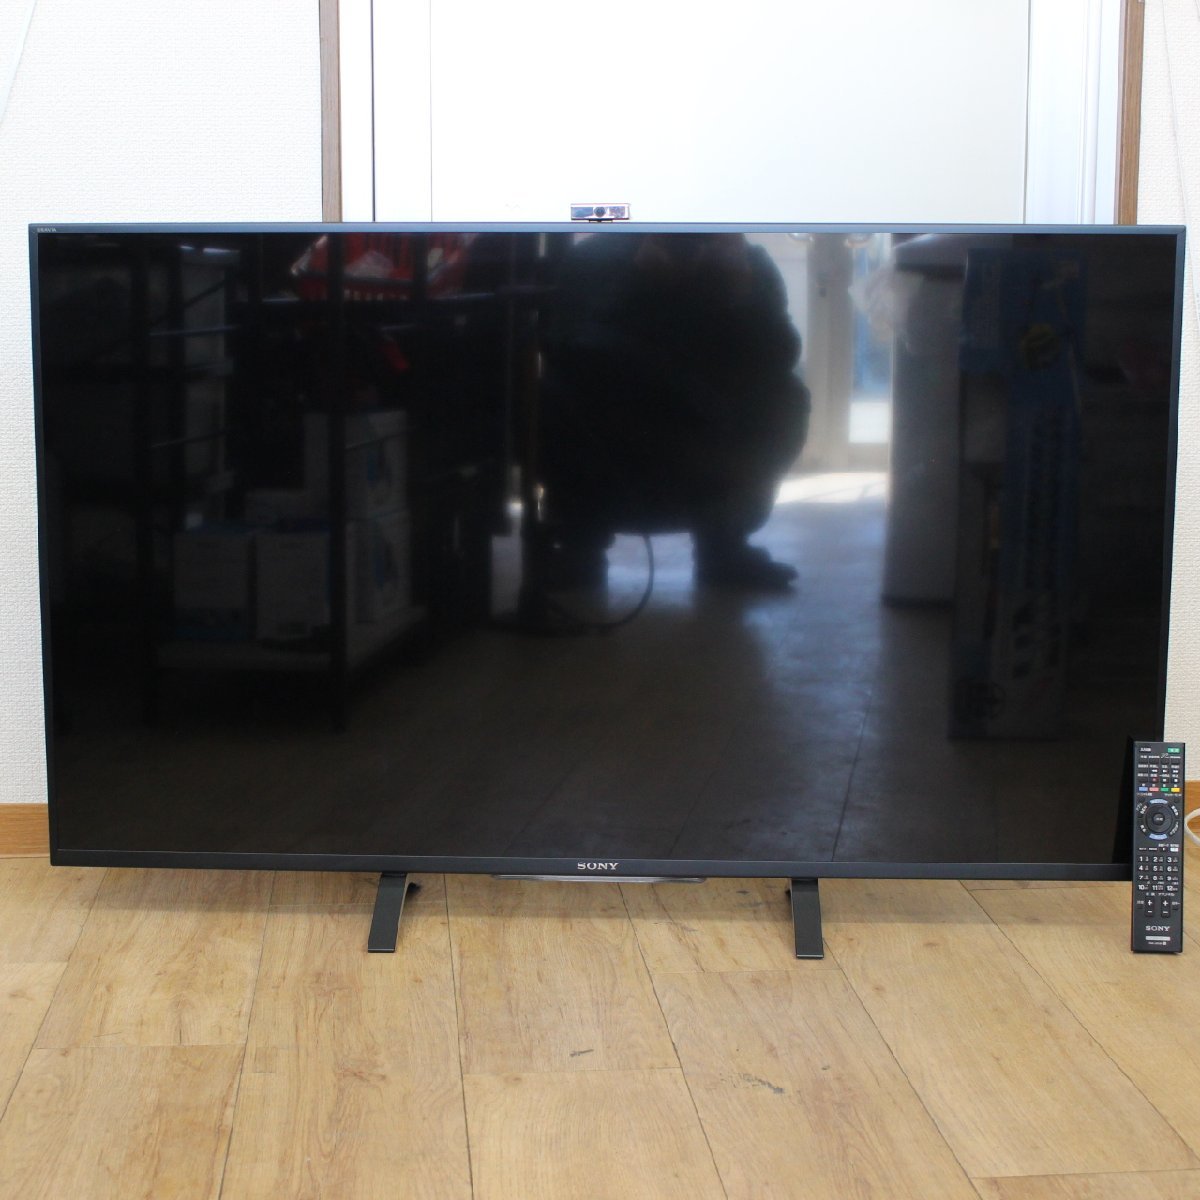 横浜市瀬谷区にて ソニー 4K対応液晶テレビ KD-49X8500B 2014年製 を出張買取させて頂きました。